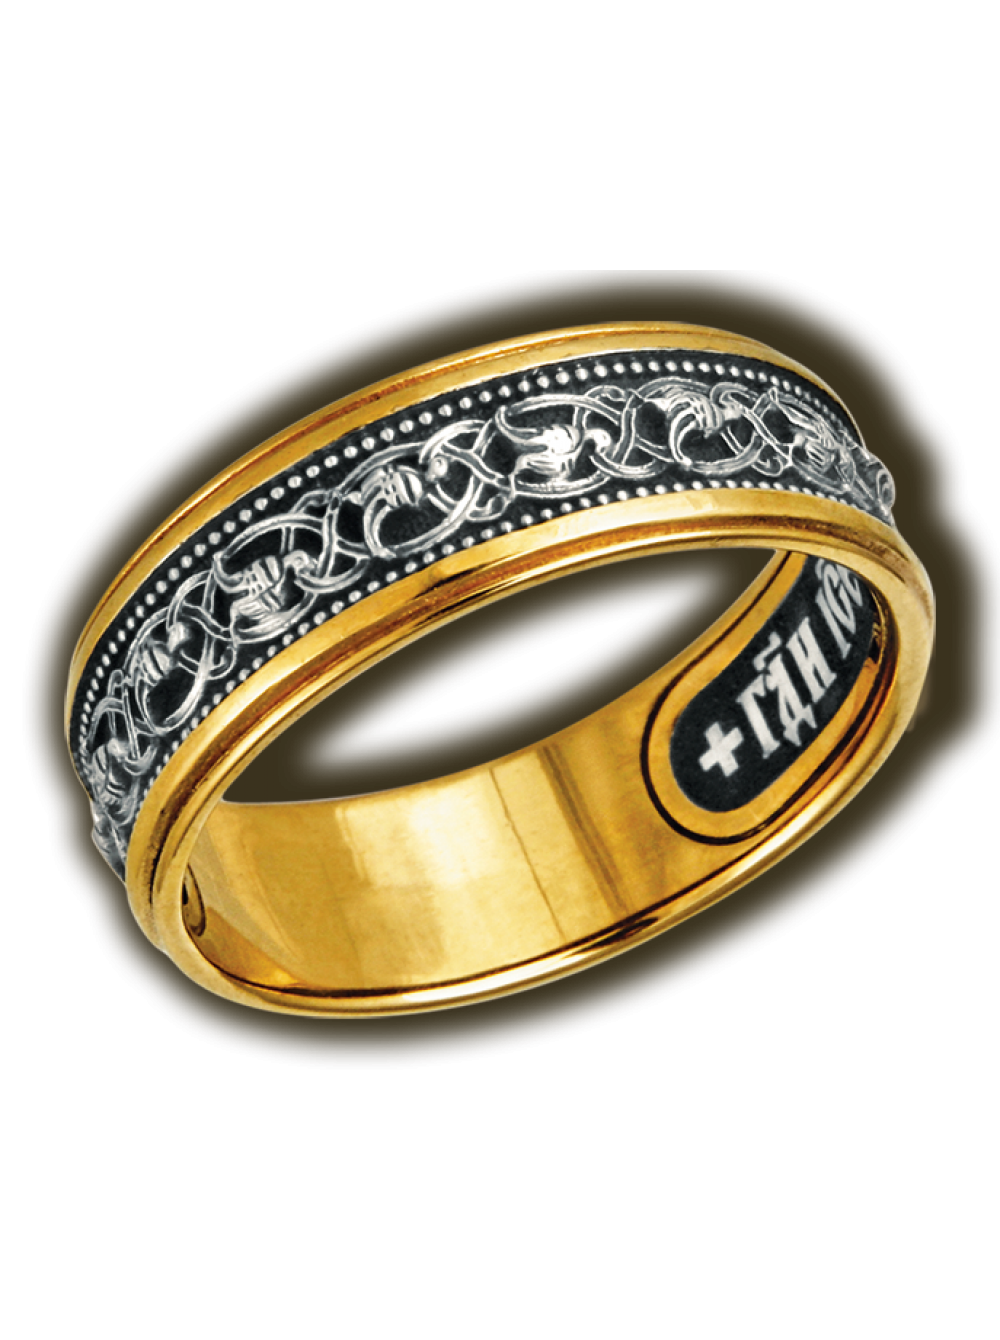 Мужские ювелирные изделия каталог. Кольцо 153153858 Gold серебро. Православное кольцо с эмалью Ювелия. Мужское кольцо. Кольцо мужское золото.